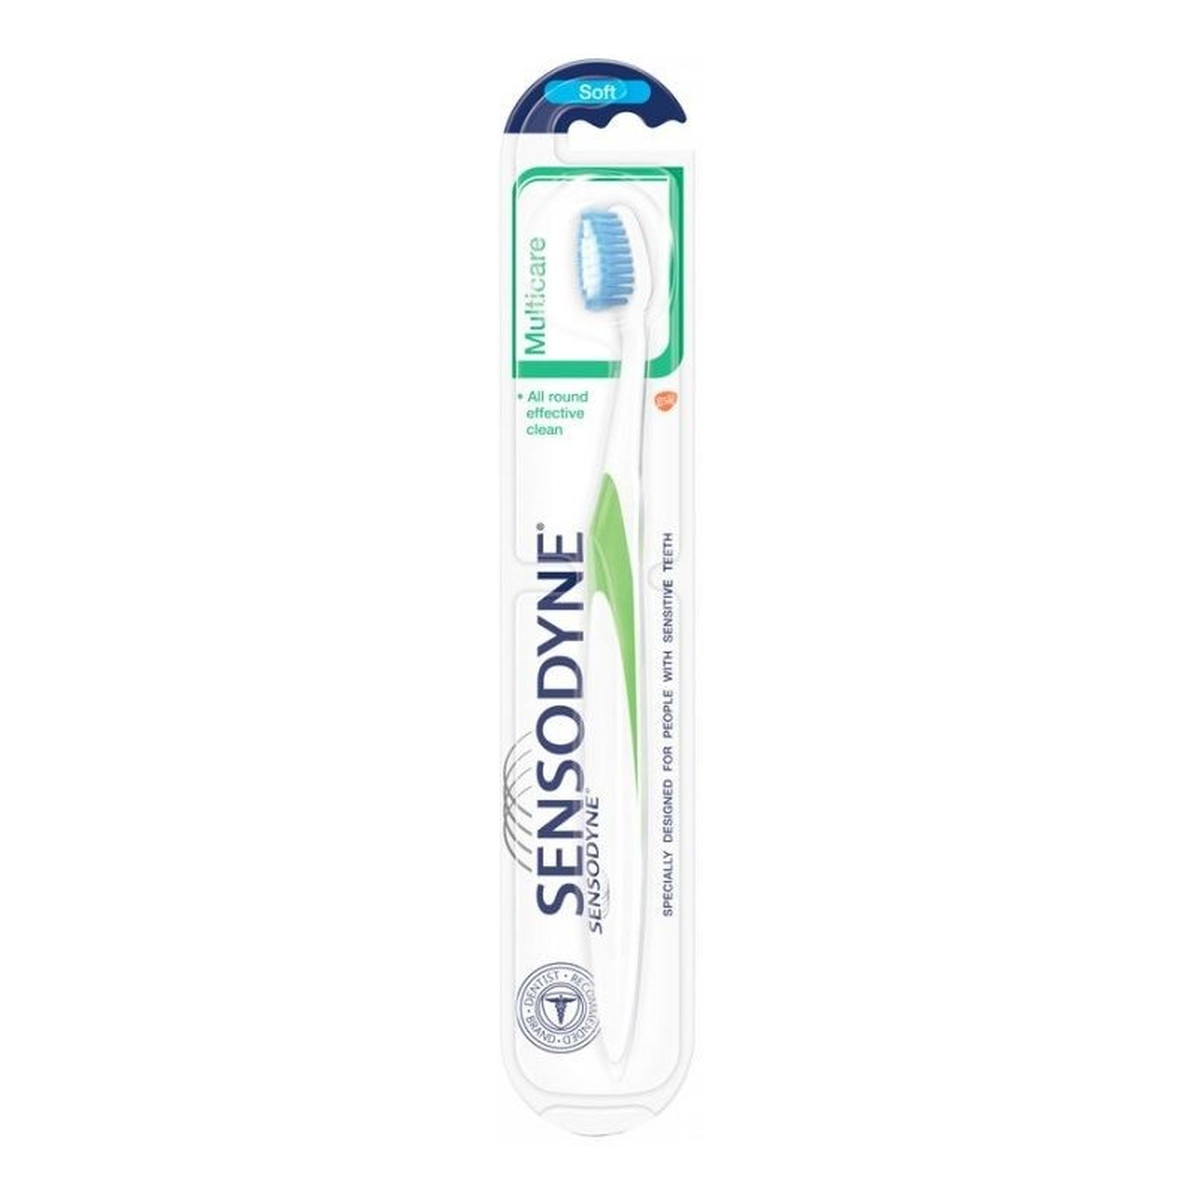 Sensodyne Complete Protection szczoteczka do zębów Multicare Soft miękka